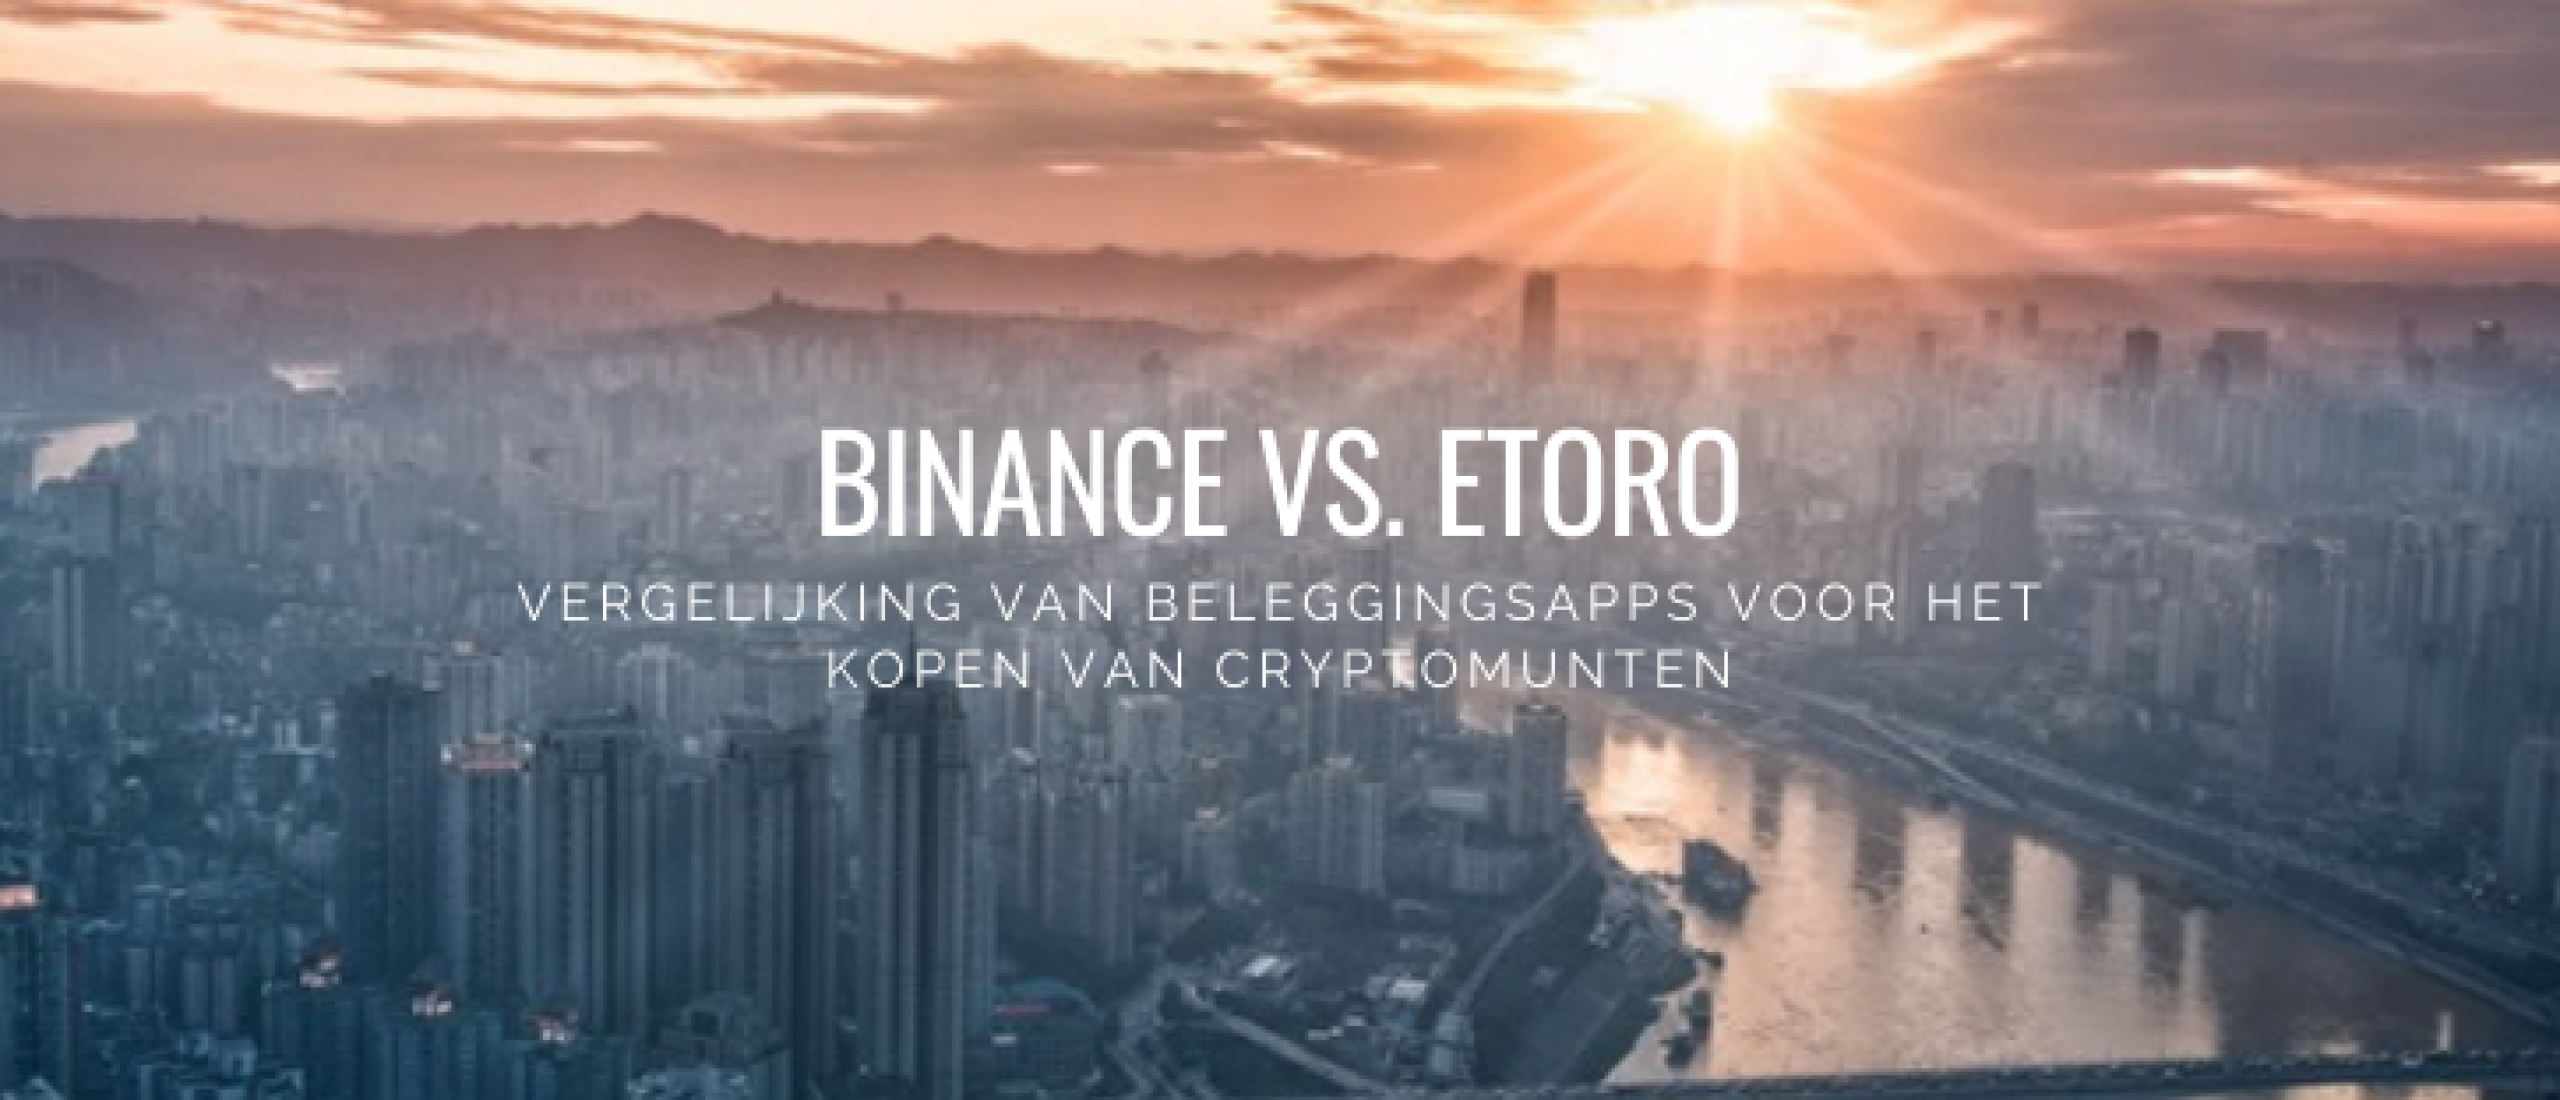 eToro vs. Binance Vergelijken voor Crypto Kopen | Happy Investors